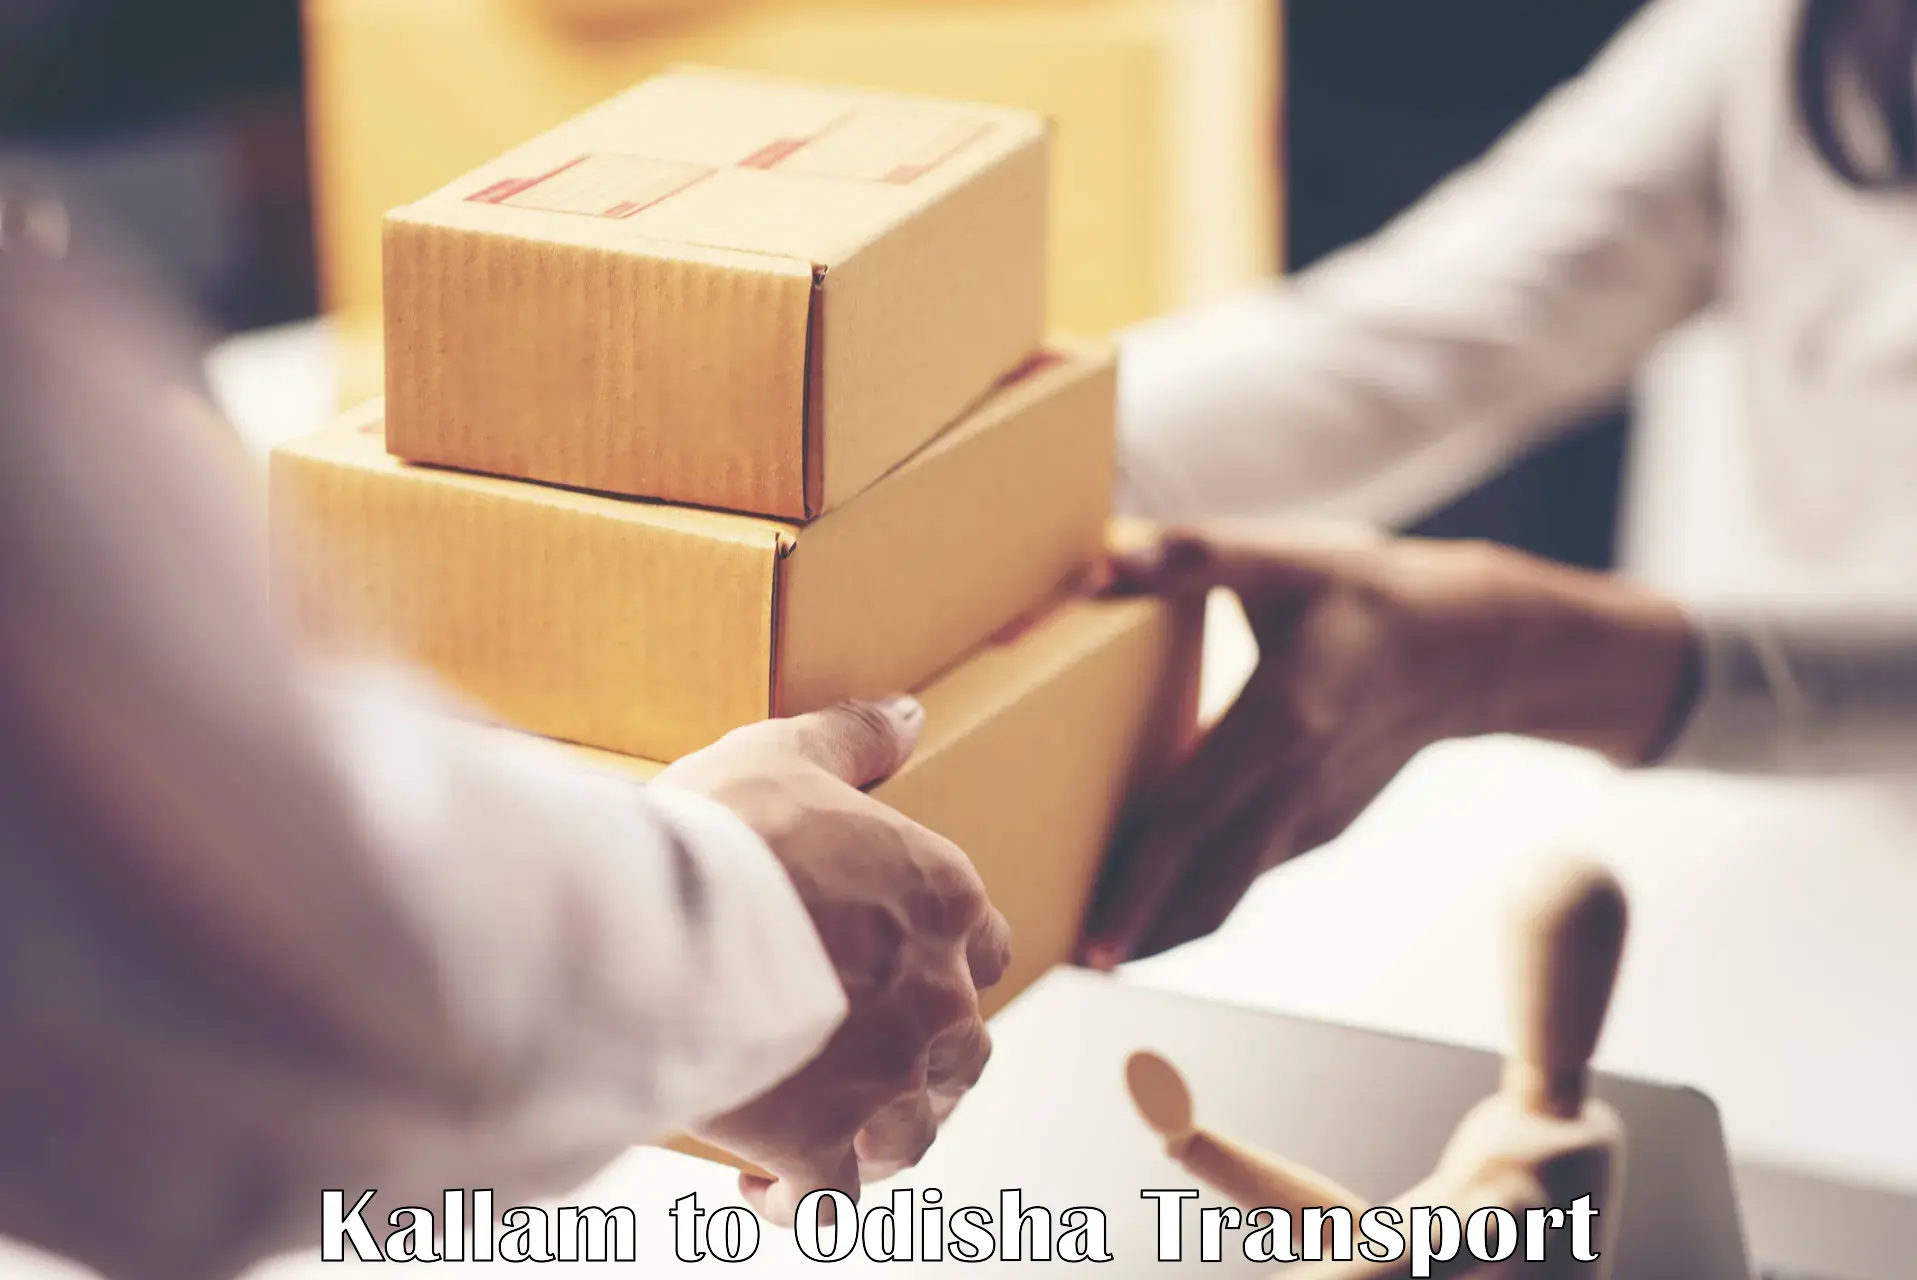 Daily transport service Kallam to Kesinga